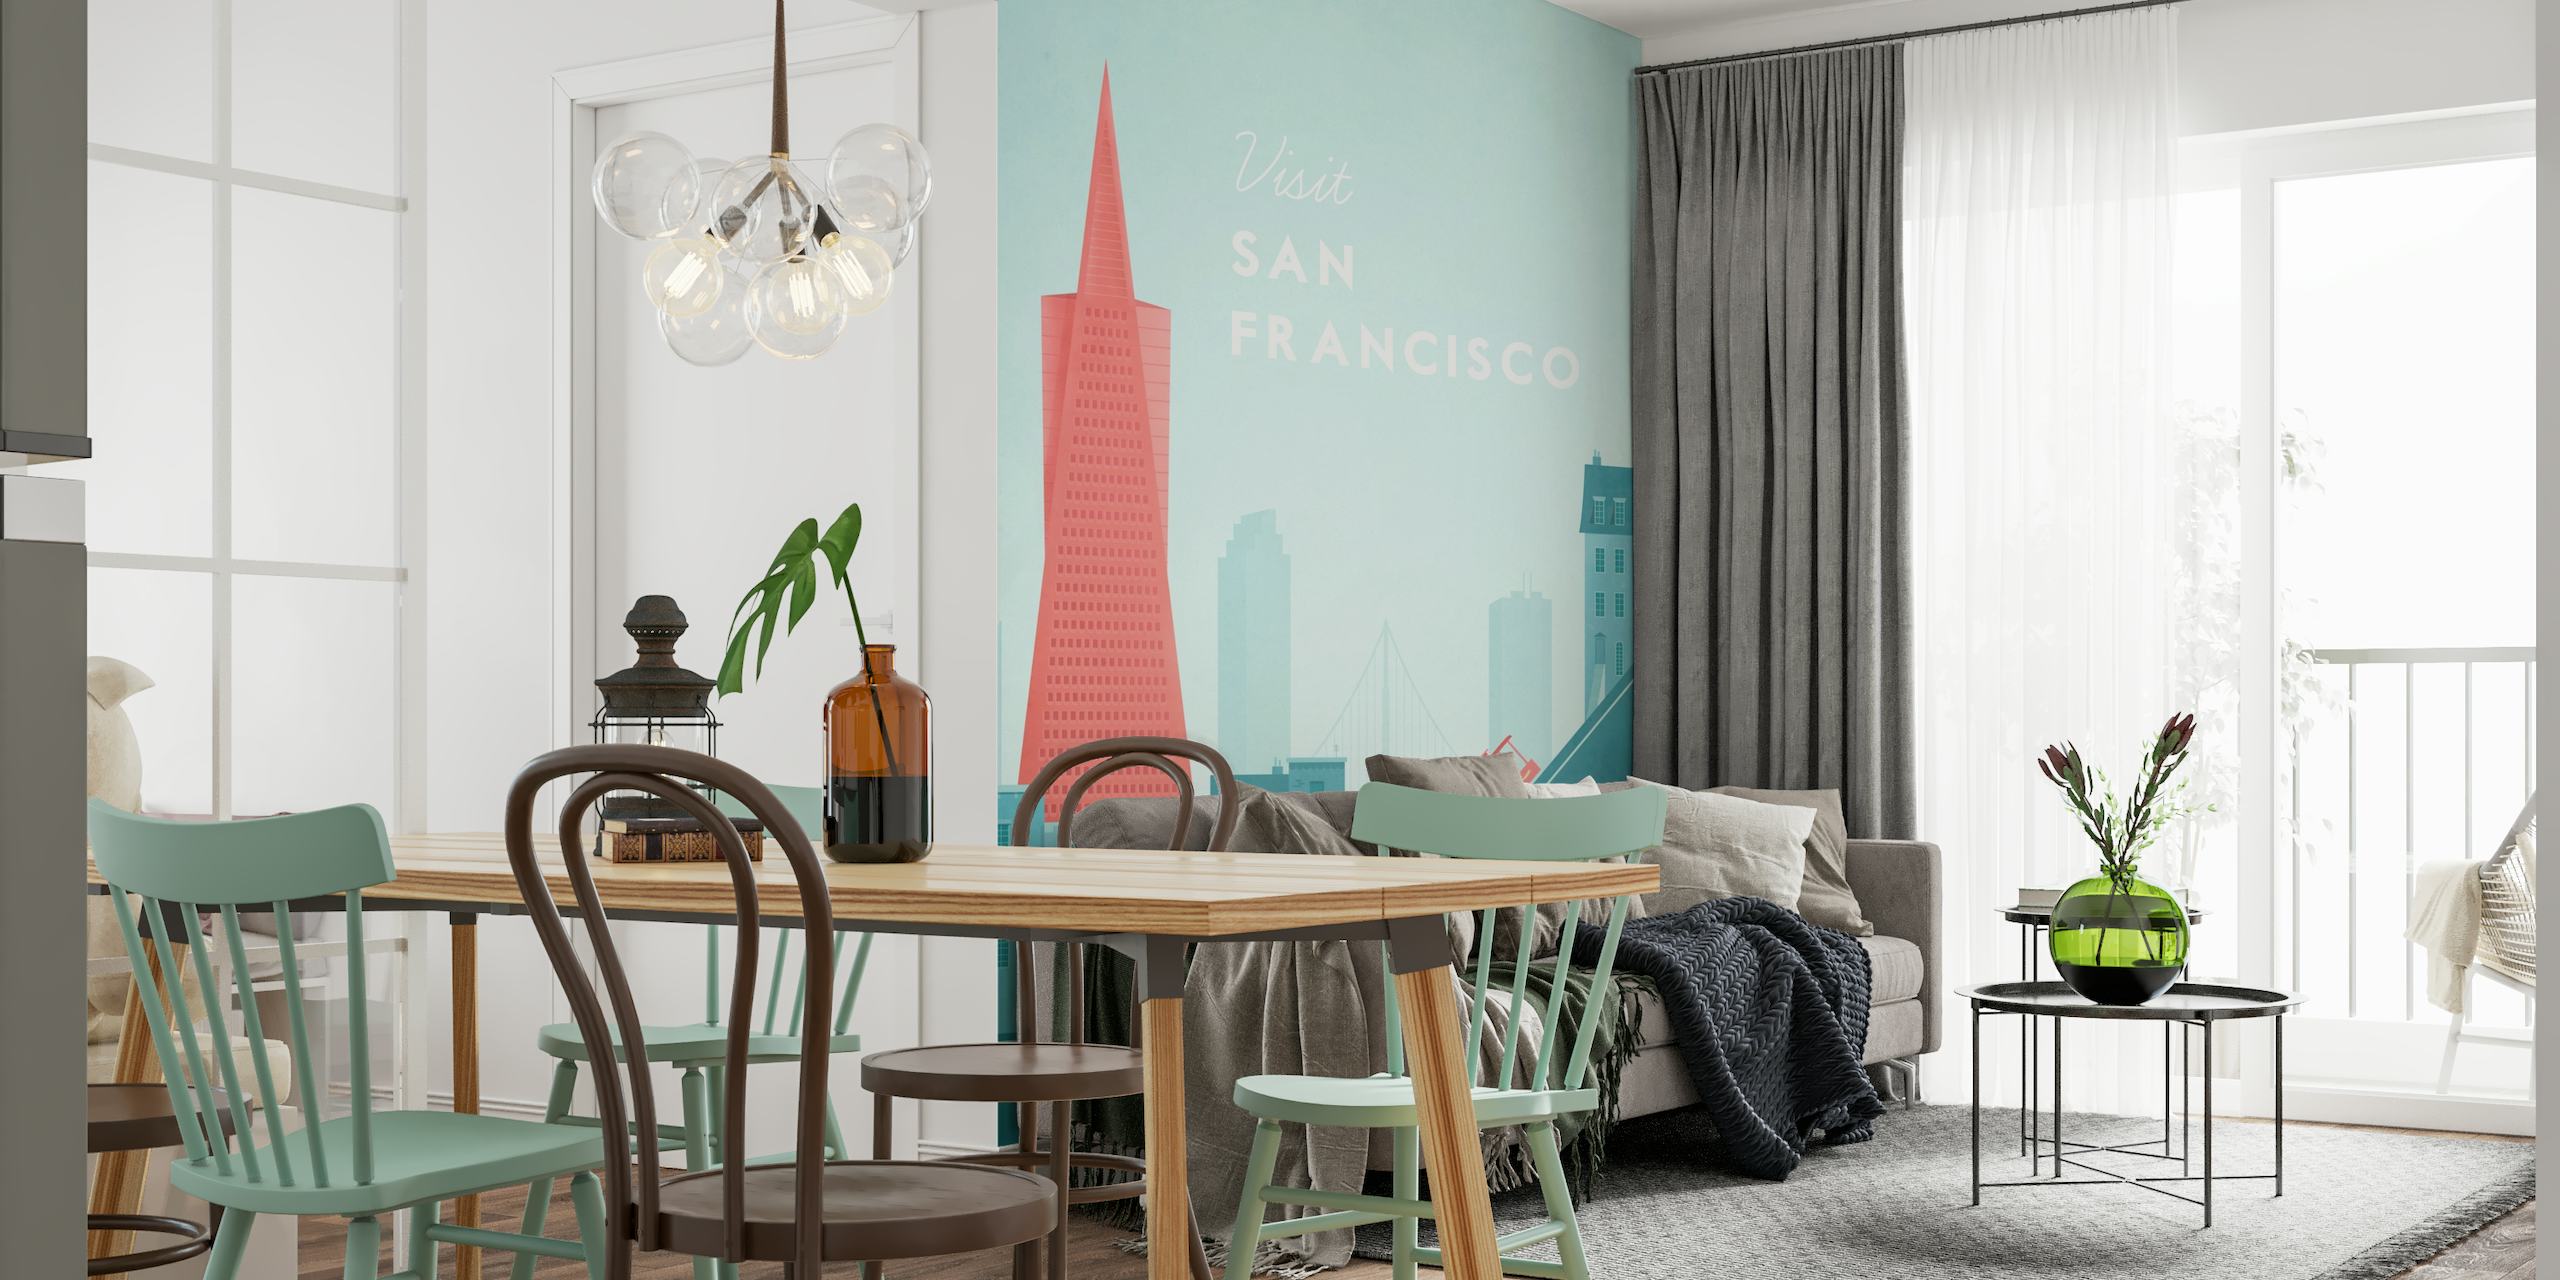 San Francisco Travel Poster papel pintado